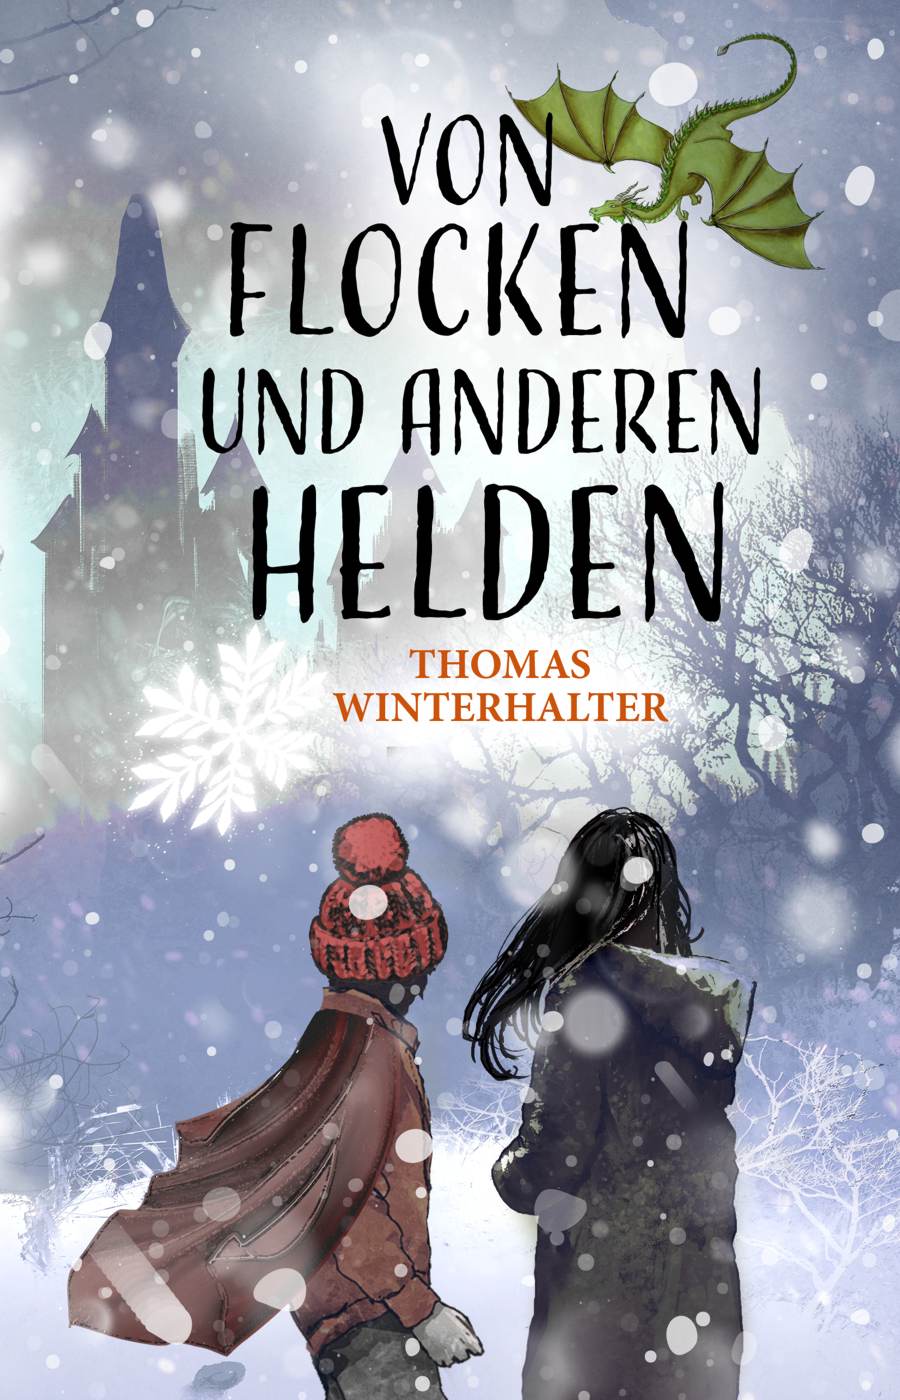 Buchcover: Thomas Winterhalter - "Von Flocken und anderen Helden"